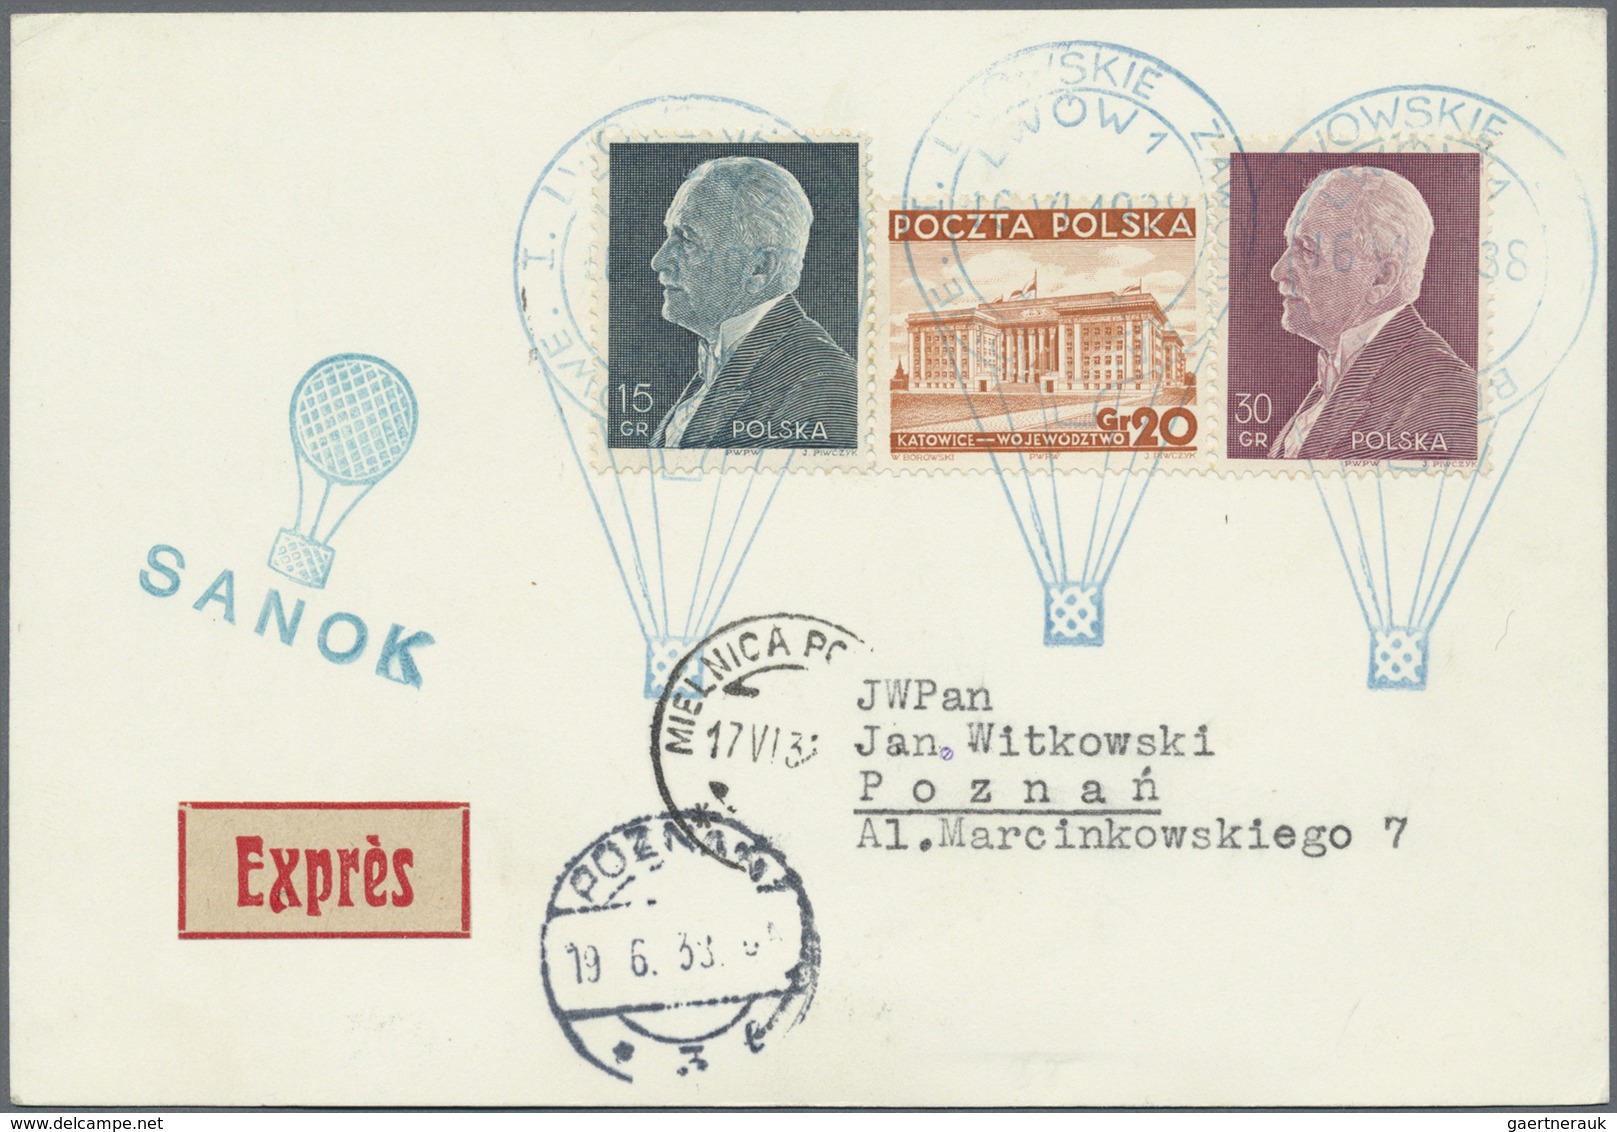 Br Ballonpost: 1938, 16.VI., Poland, complete set of six balloon cards/cover: balloons "Sanok", "Mościc